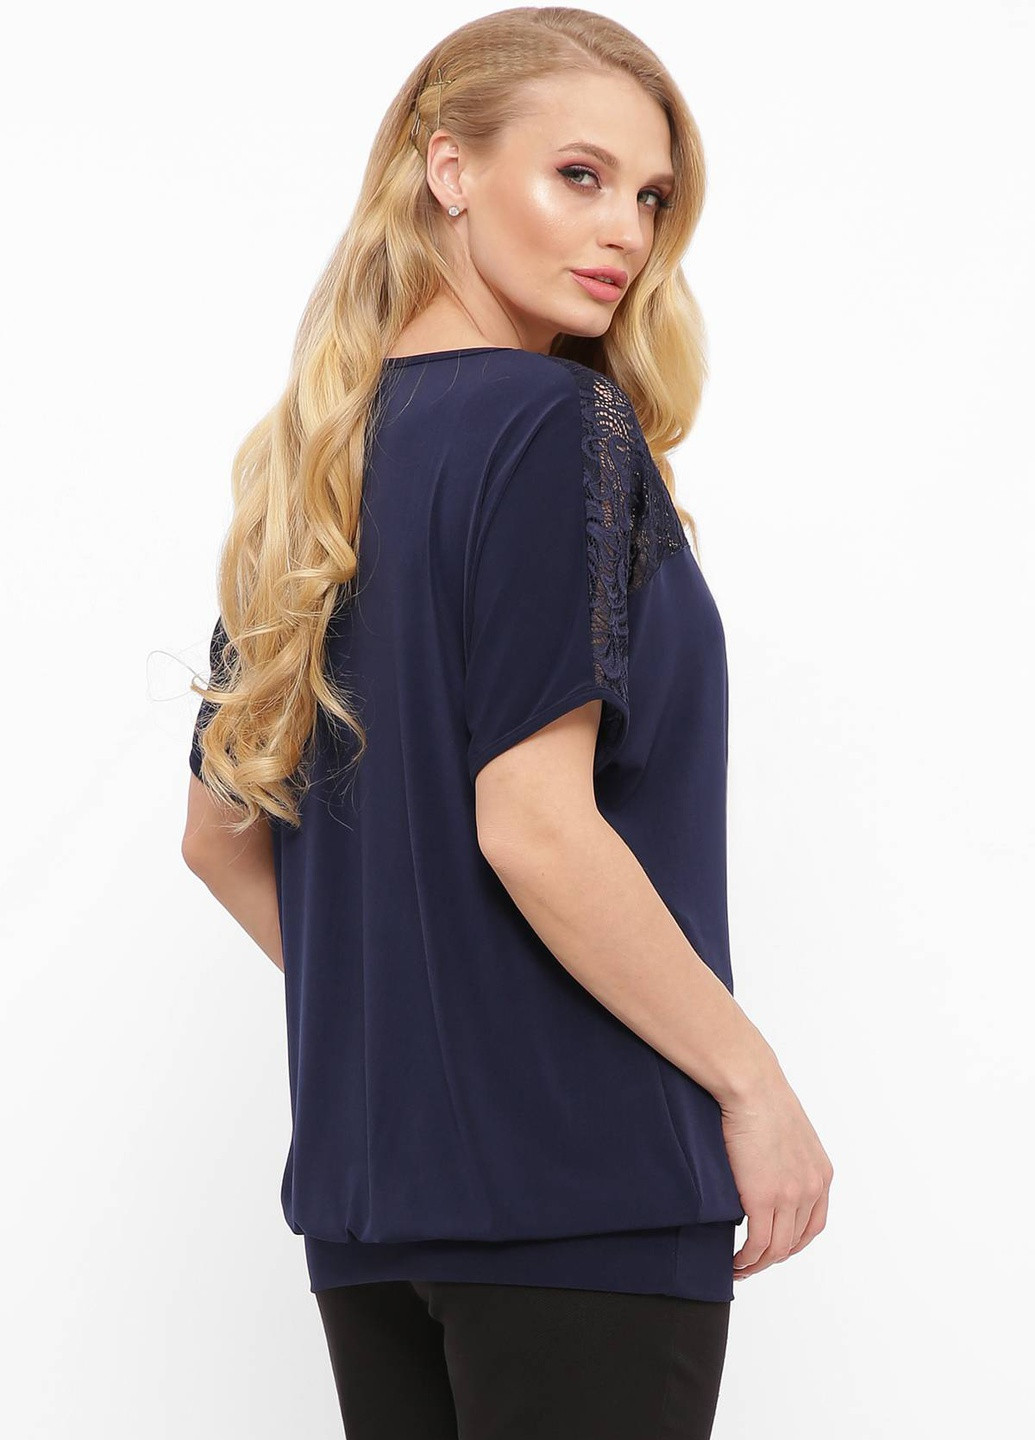 Темно-синяя летняя футболка с гипюровой кокеткой шон темно-синий Tatiana